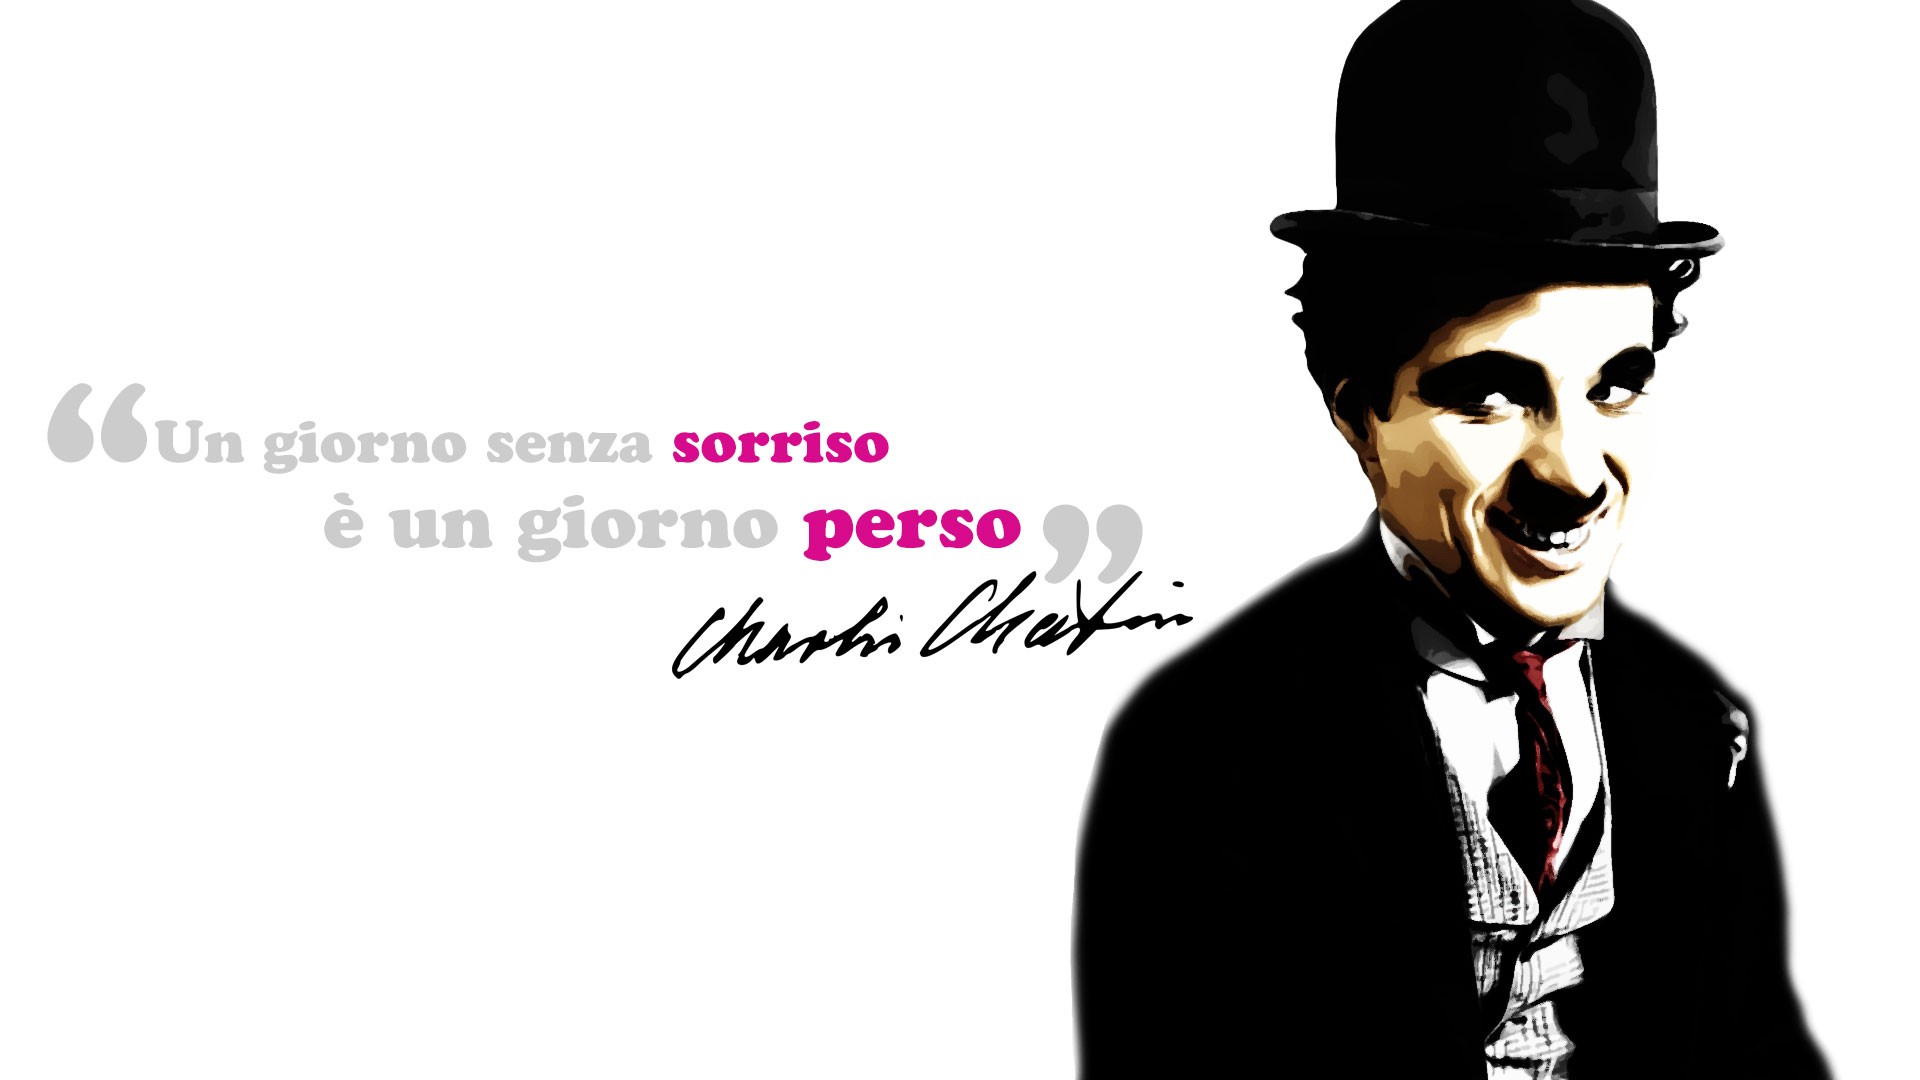 People 1920x1080 Charlie Chaplin quote typography men actor celebrity